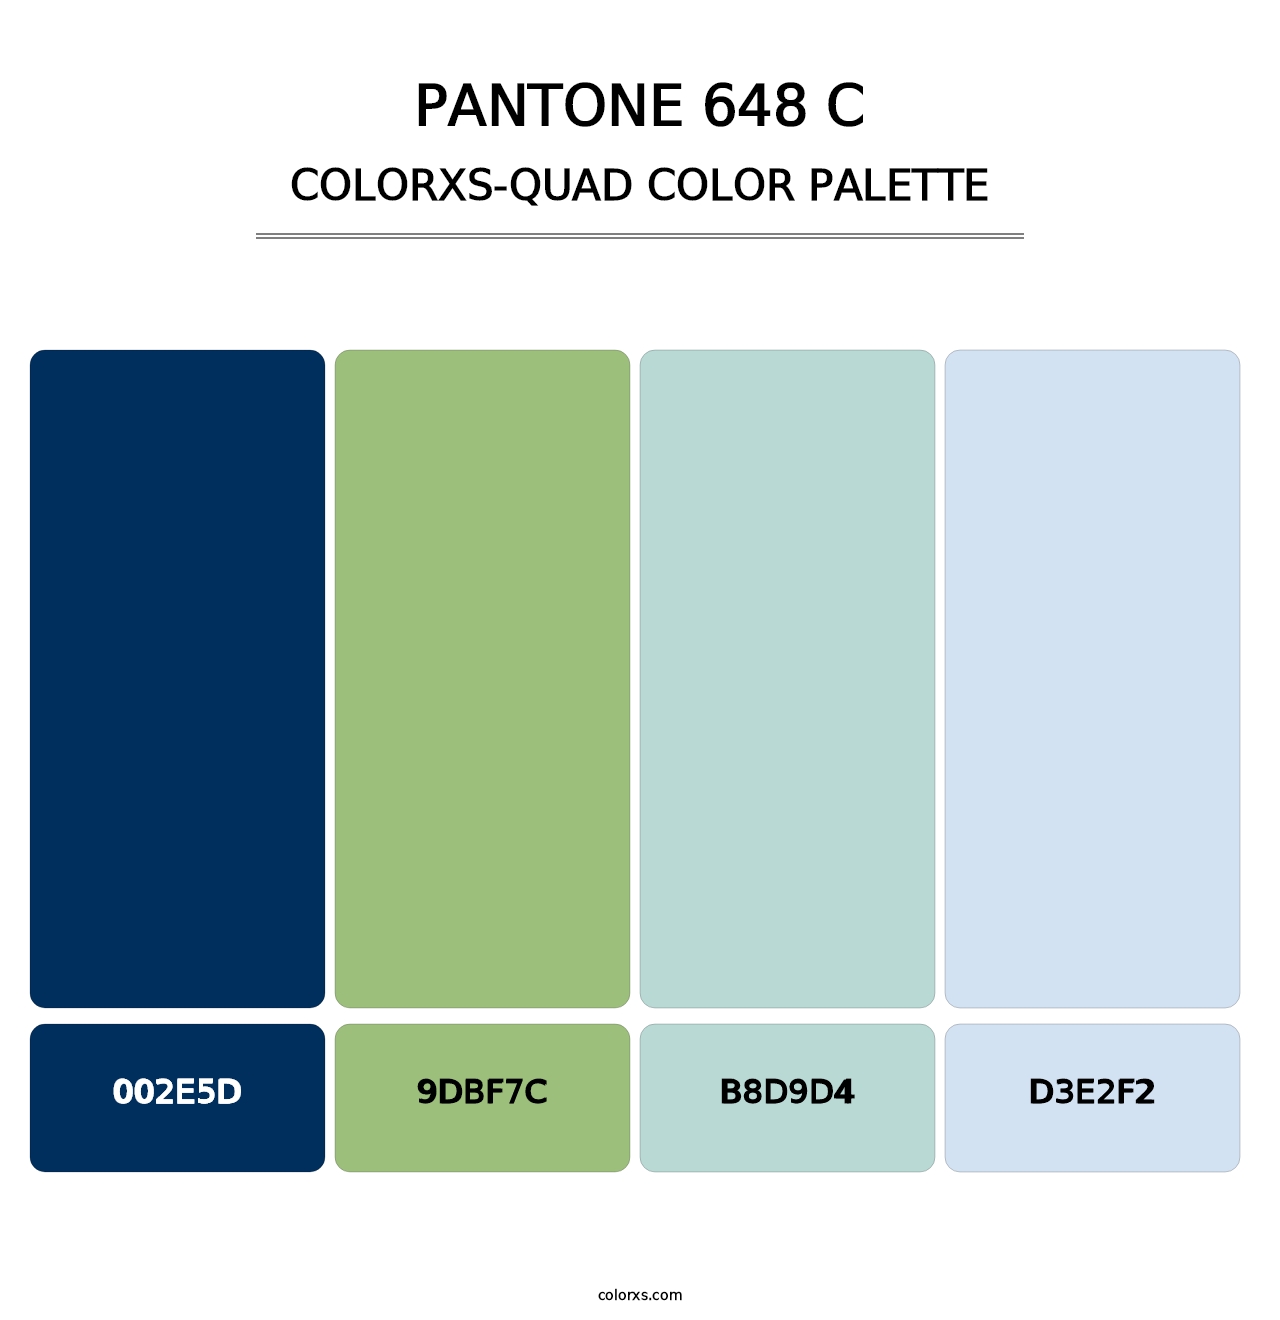 PANTONE 648 C - Colorxs Quad Palette